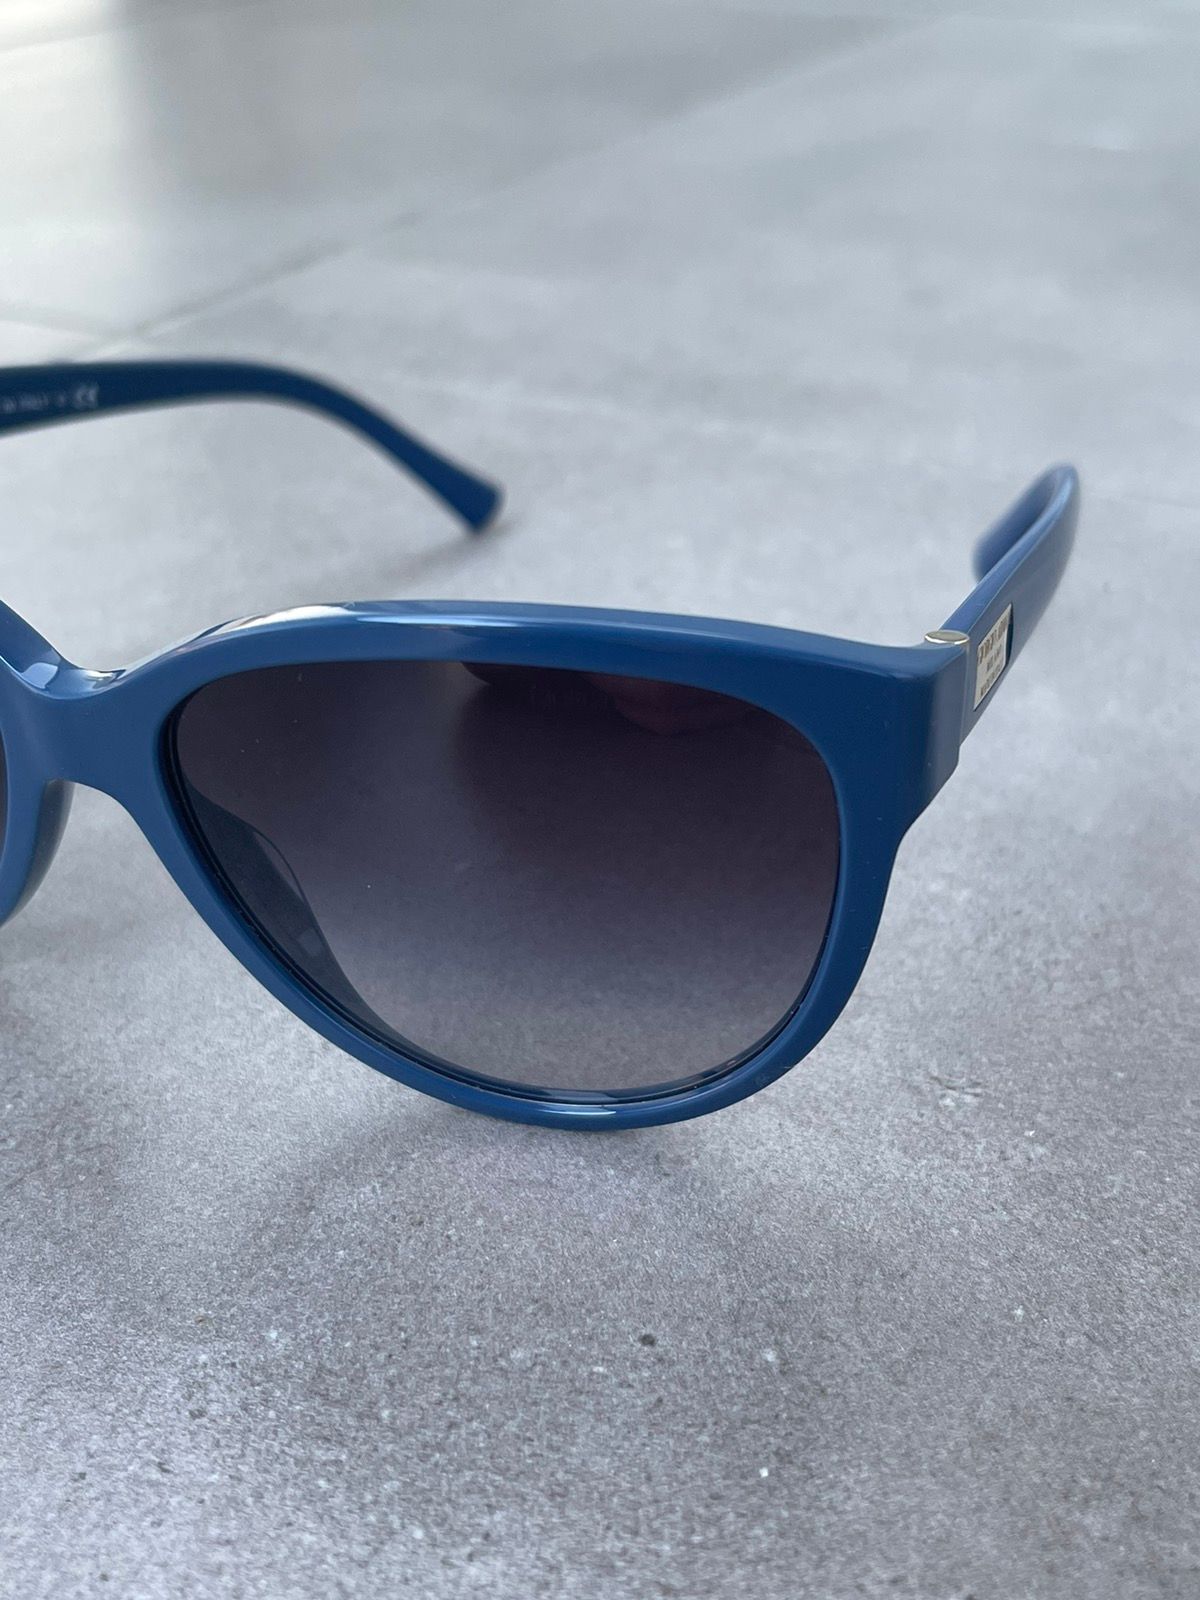 Pre-owned Armani X Emporio Armani Giorgio Armani Ar8021 5114/8g Blue Sunglasses